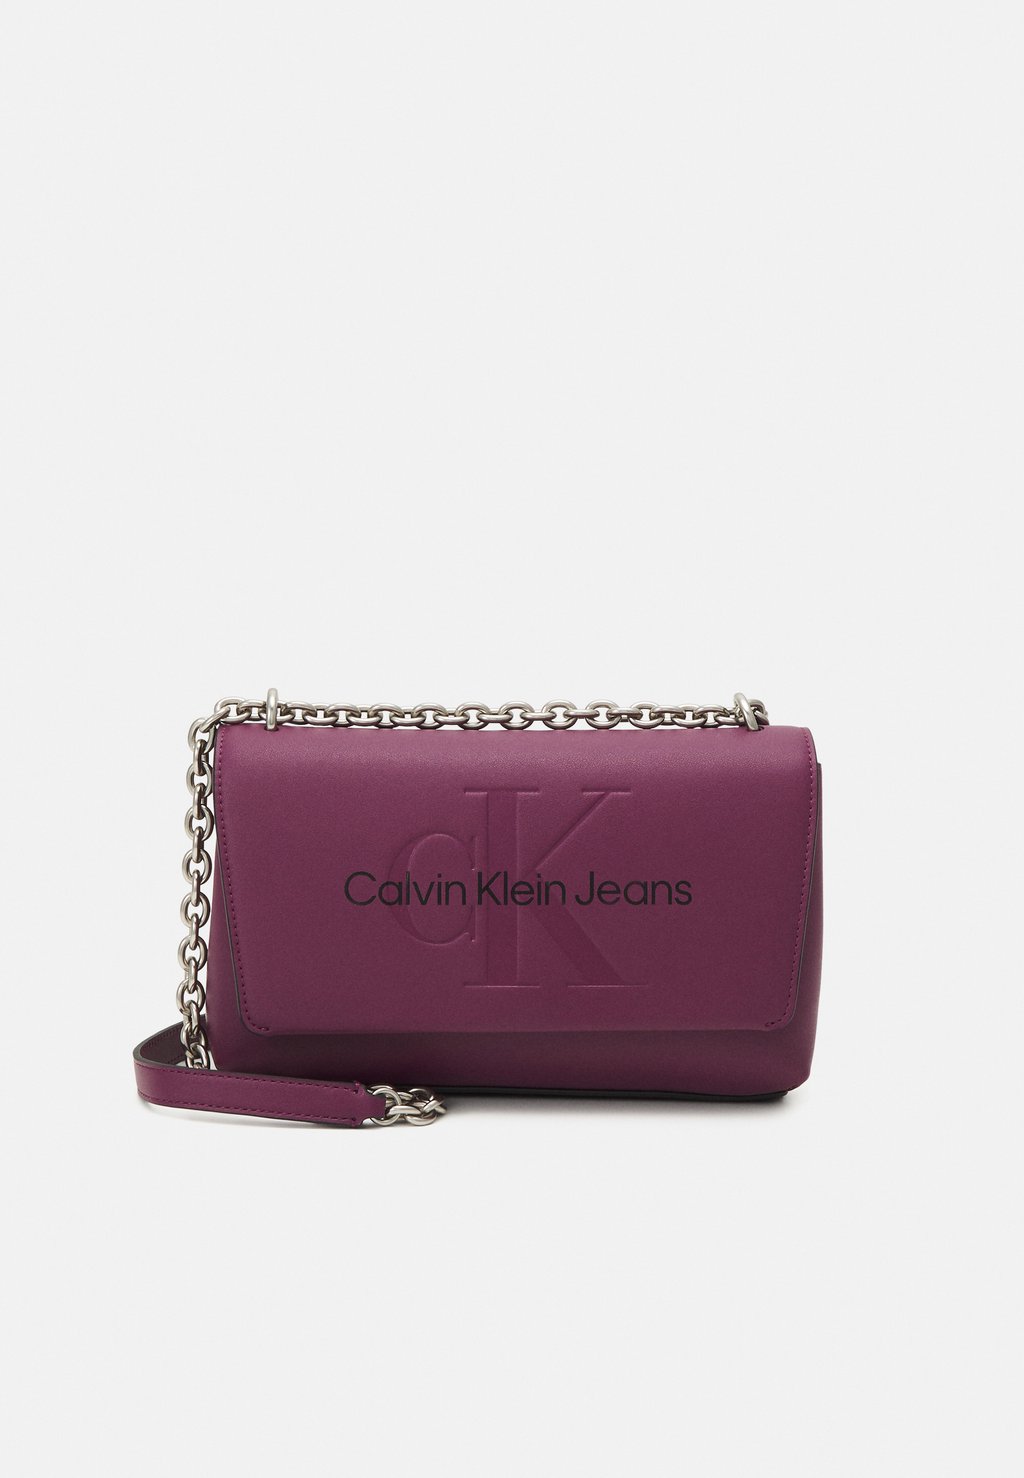 Сумка Calvin Klein Jeans SCULPTED FLAP MONO, цвет amaranth сумка через плечо sculpted flap mono calvin klein jeans цвет white silver logo